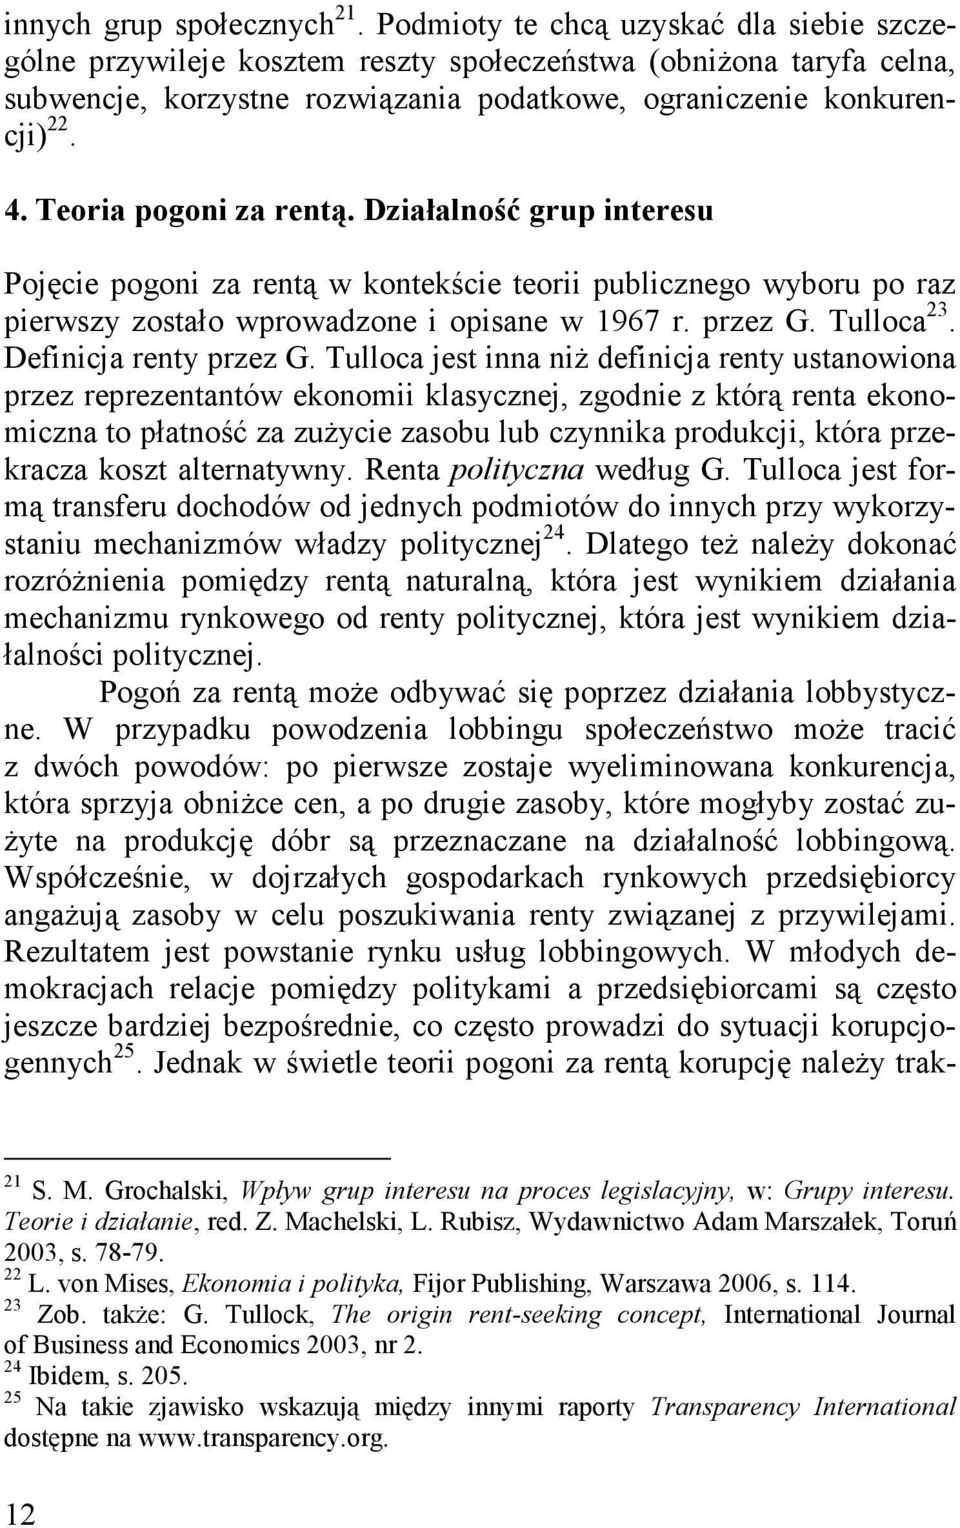 Teoria pogoni za rentą. Działalność grup interesu Pojęcie pogoni za rentą w kontekście teorii publicznego wyboru po raz pierwszy zostało wprowadzone i opisane w 1967 r. przez G. Tulloca 23.